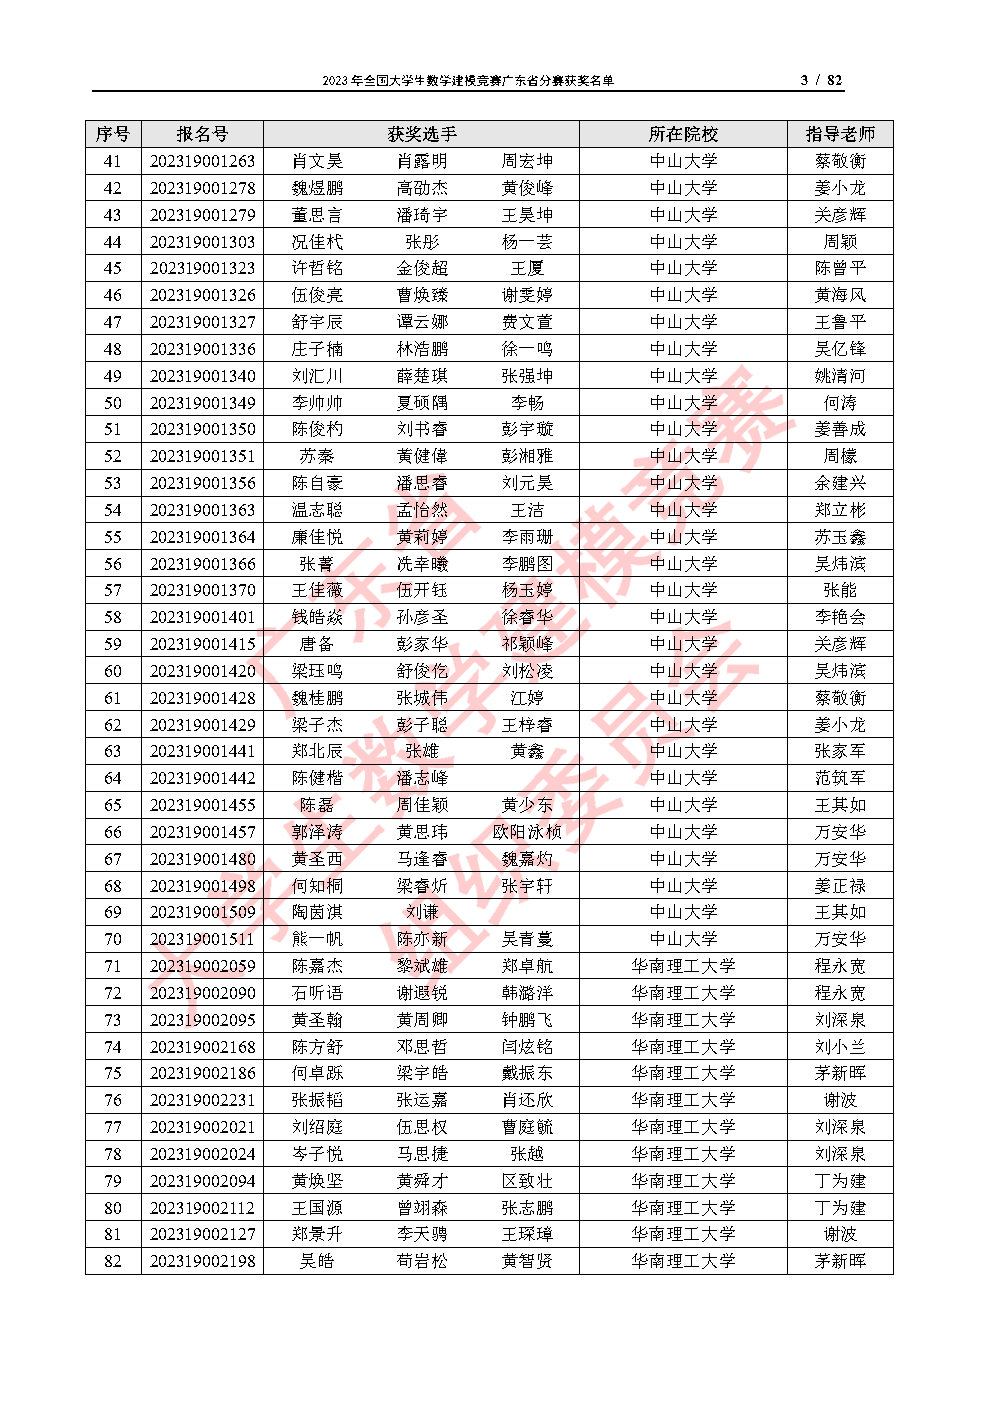 2023年全国大学生数学建模竞赛广东省分赛获奖名单_Page3.jpg